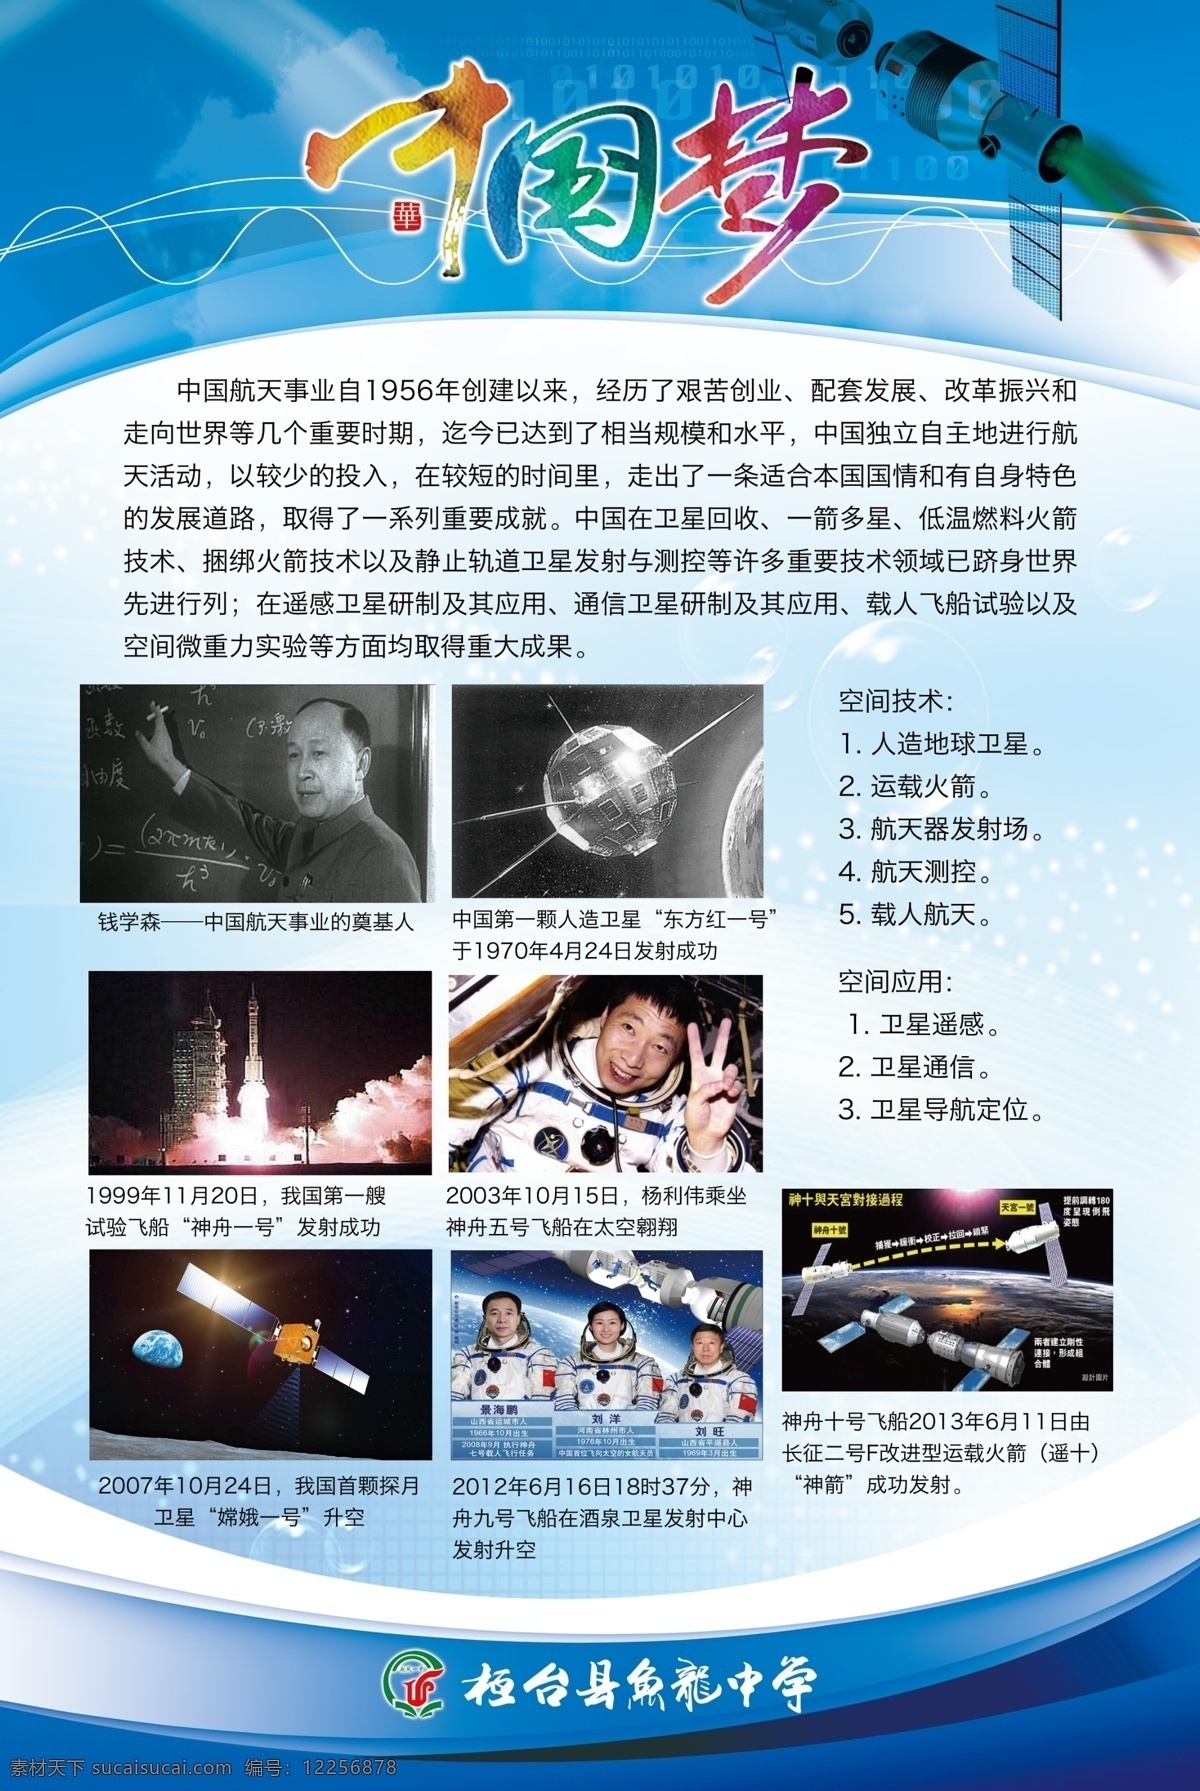 科技 展板 航空 航天 卫星 小学 学校 中国梦 中学 钱学森 杨利伟 嫦娥一号 学校展板设计